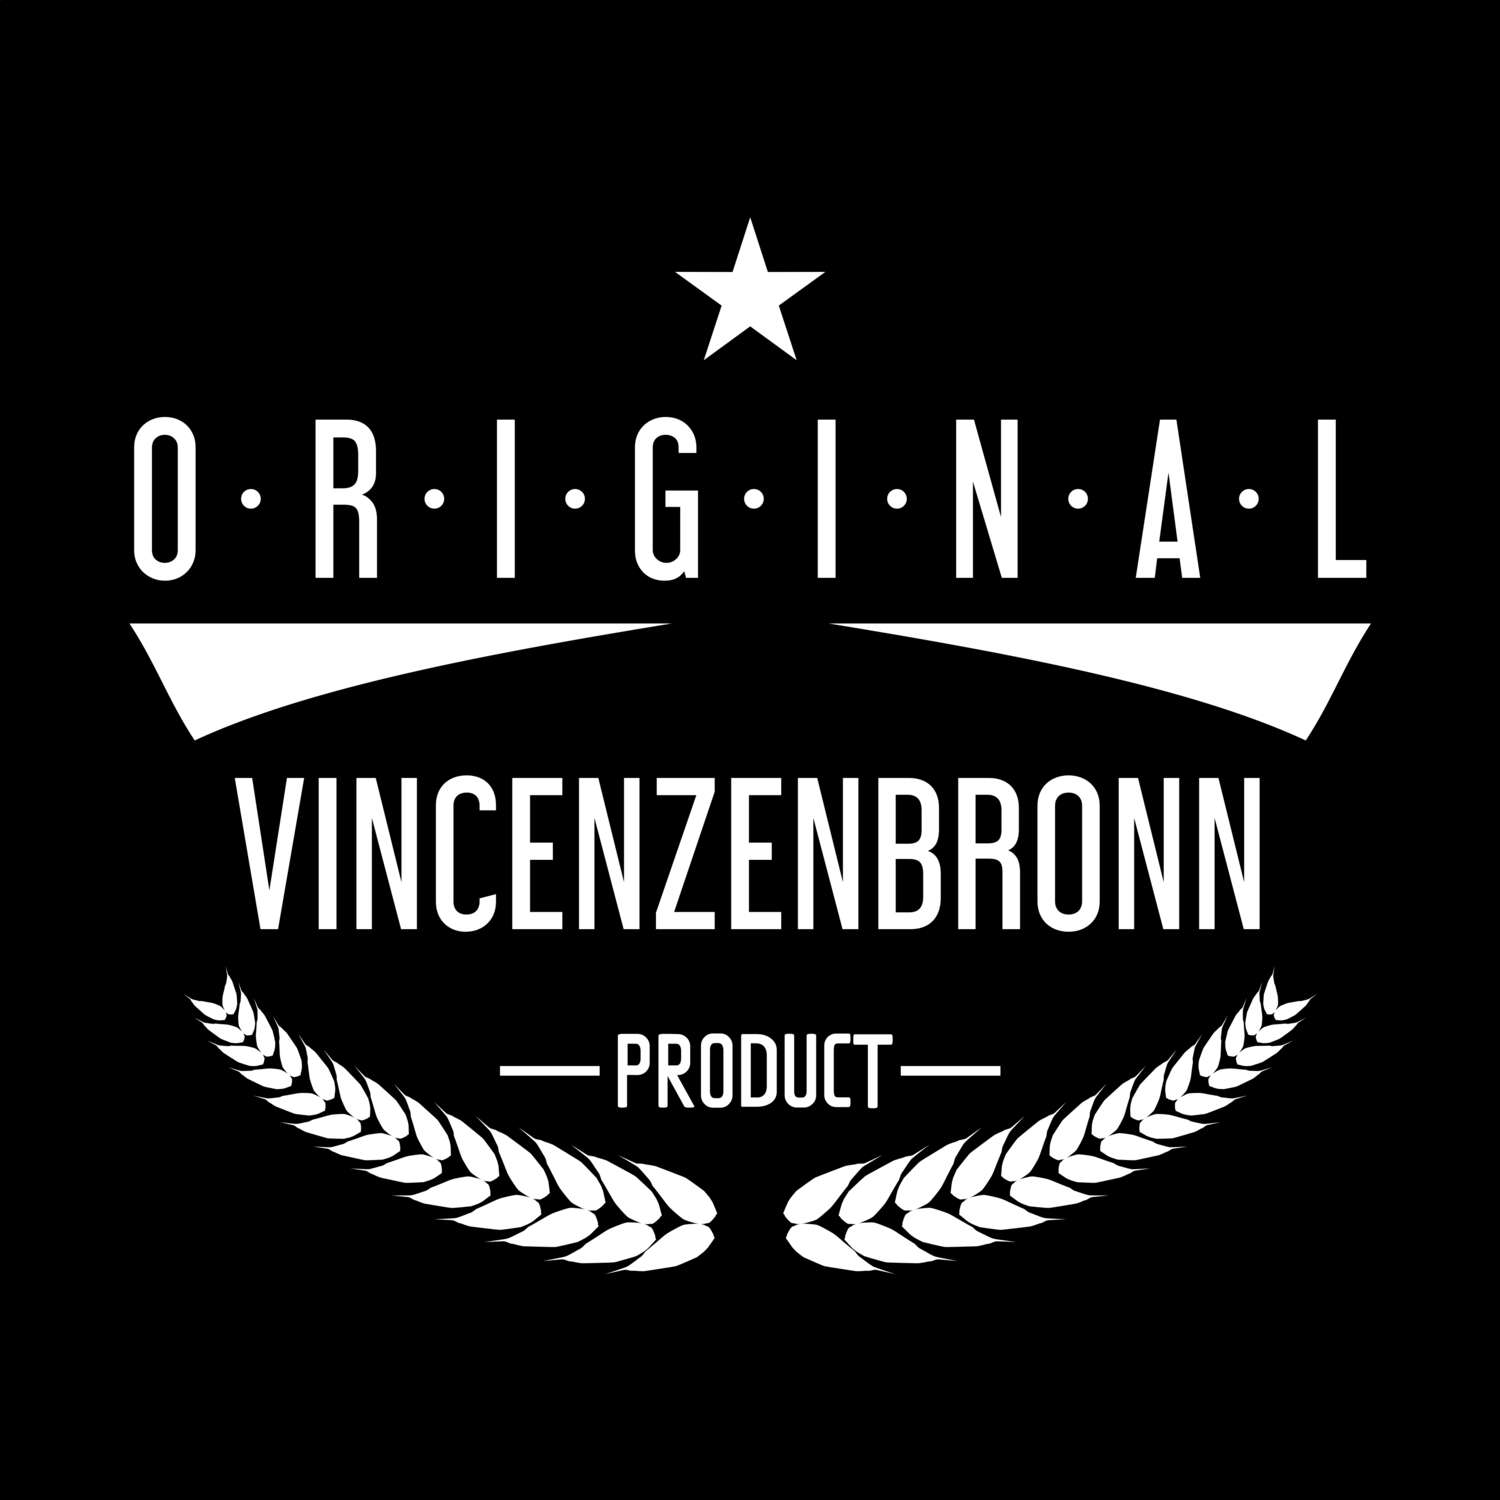 Vincenzenbronn T-Shirt »Original Product«